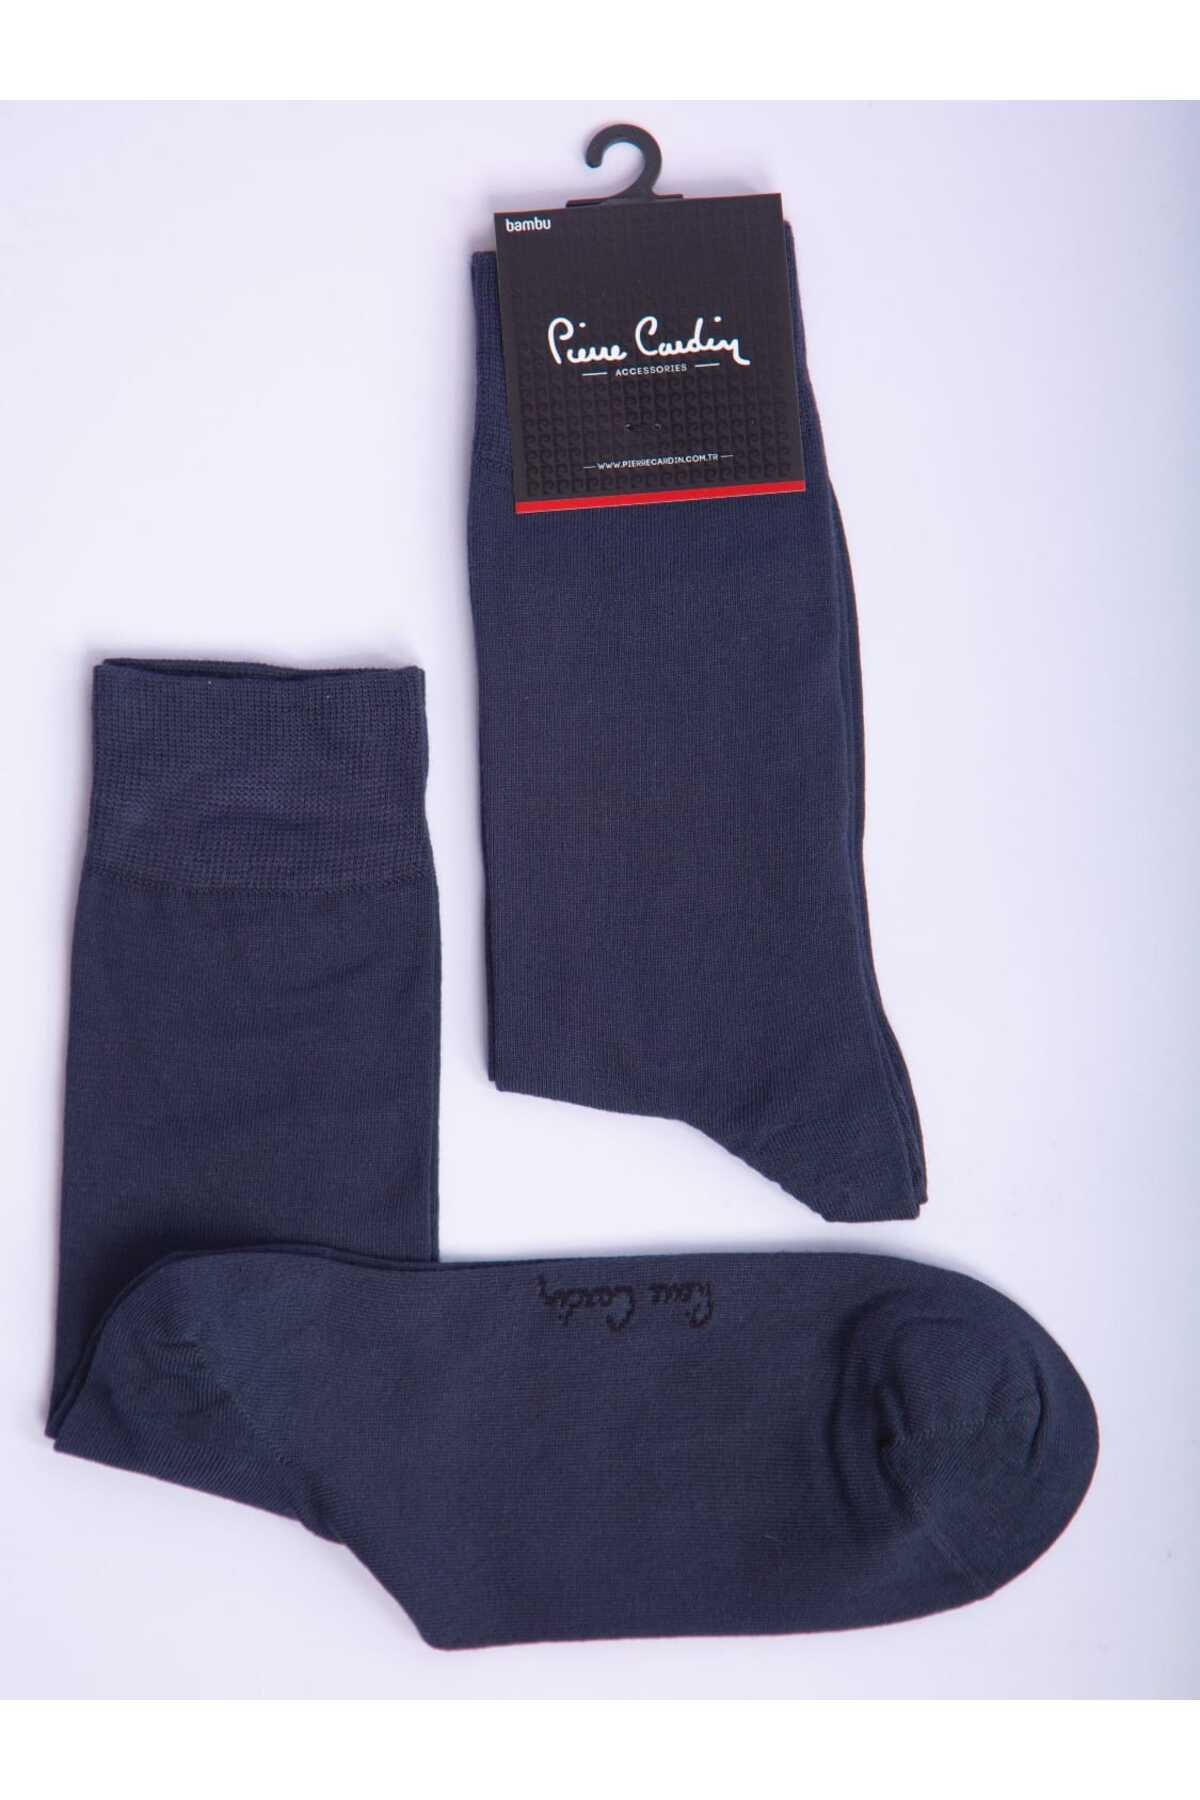 Pierre Cardin Modal Antrasit 6’lı Erken Uzun Soket Çorap Flat-900